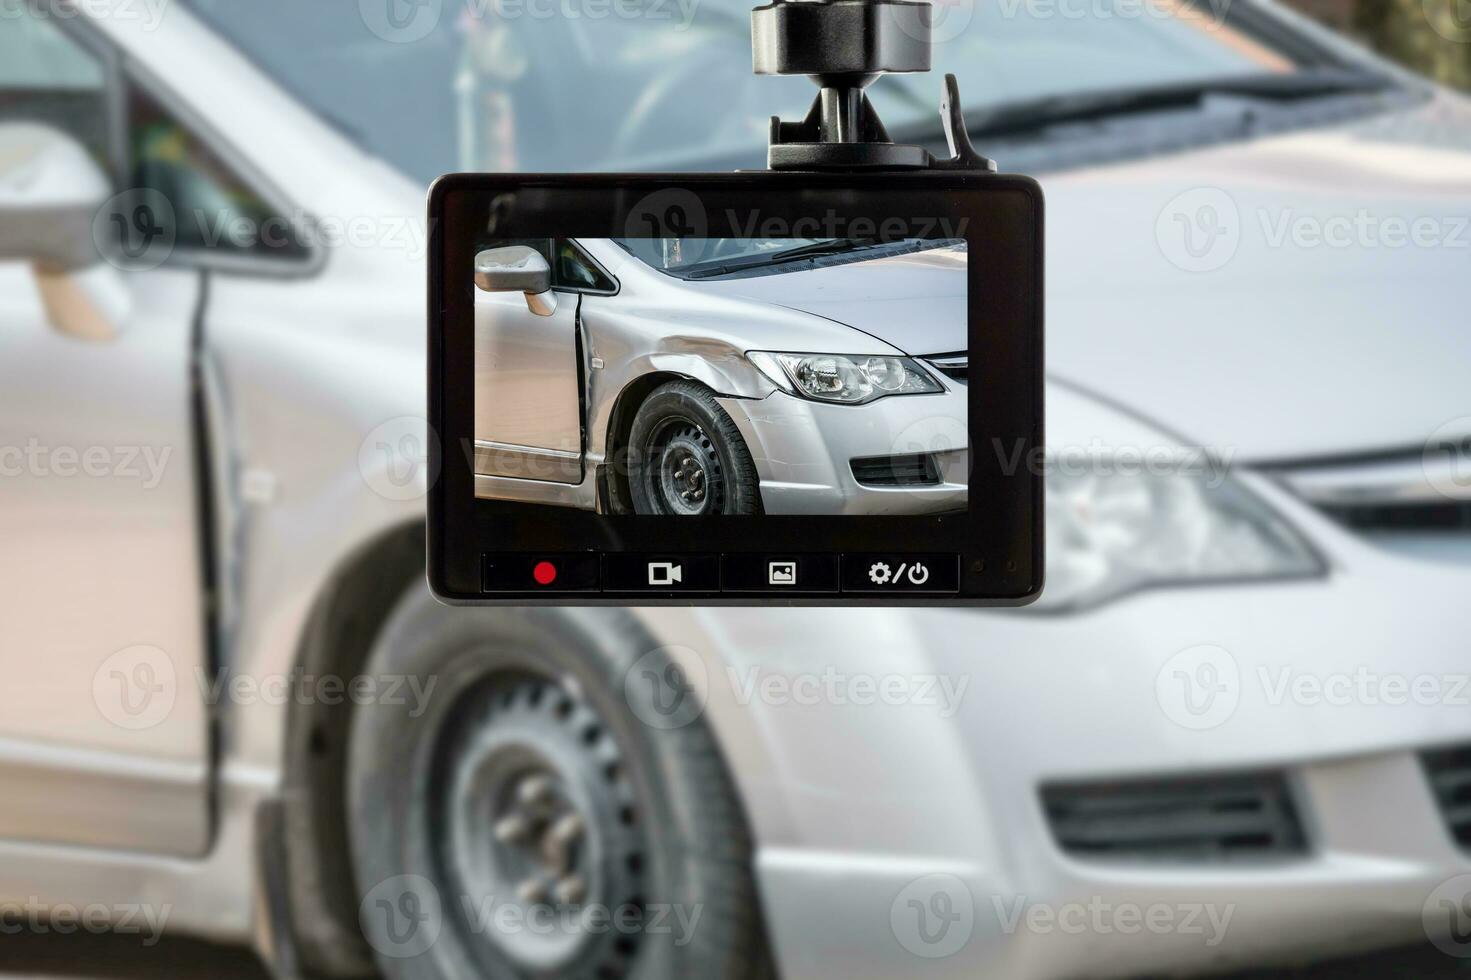 gravador de vídeo de câmera de cctv de carro com acidente de carro na estrada foto